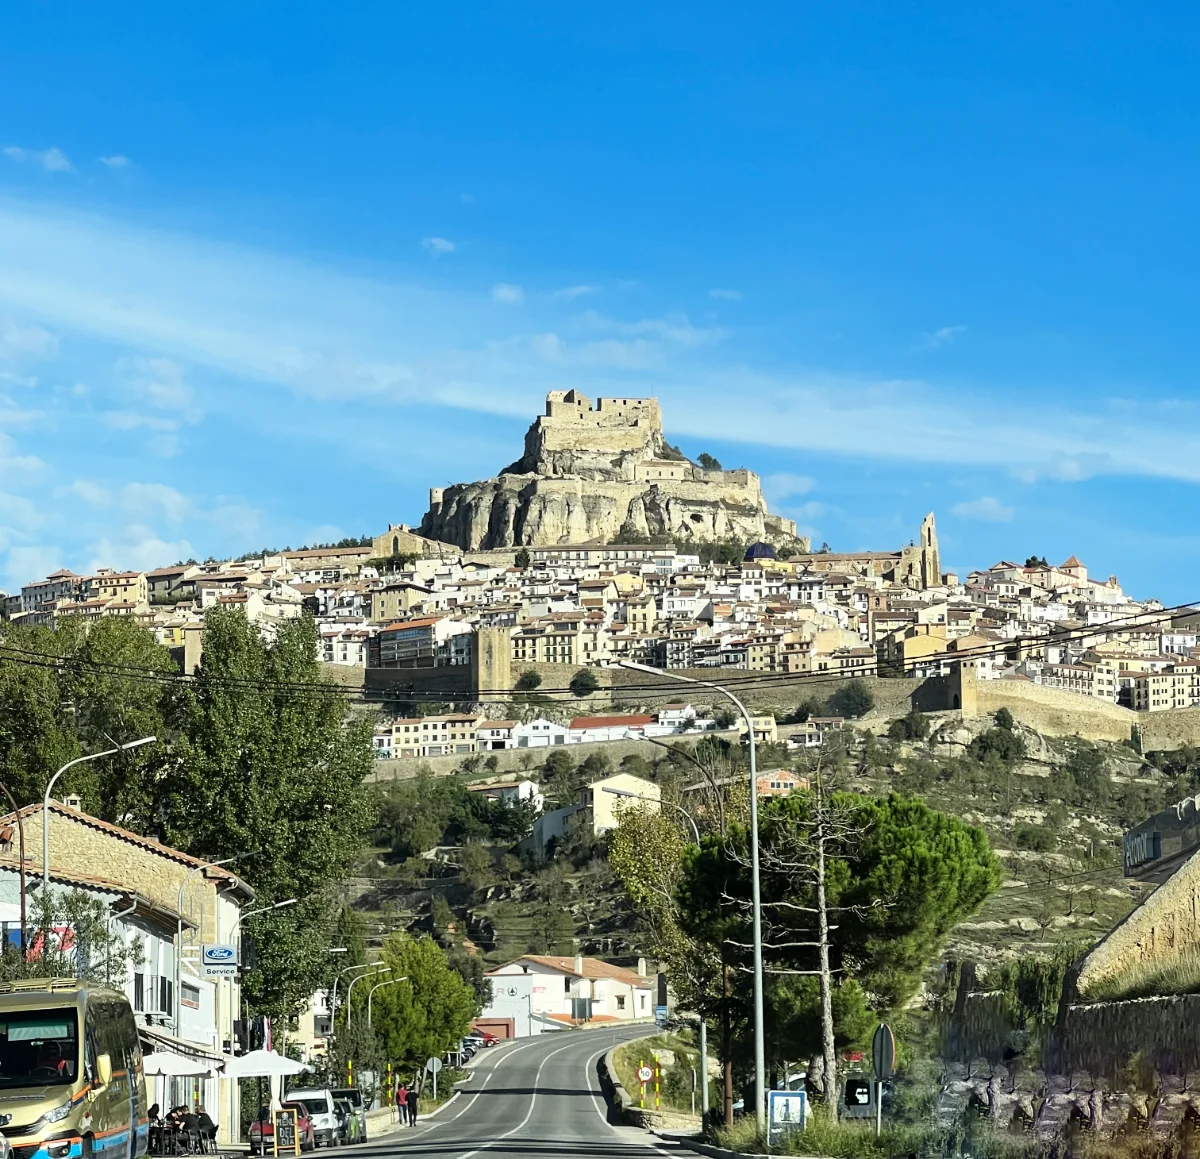 ¡“Morella“, donde la Montaña quiso ser Castillo!